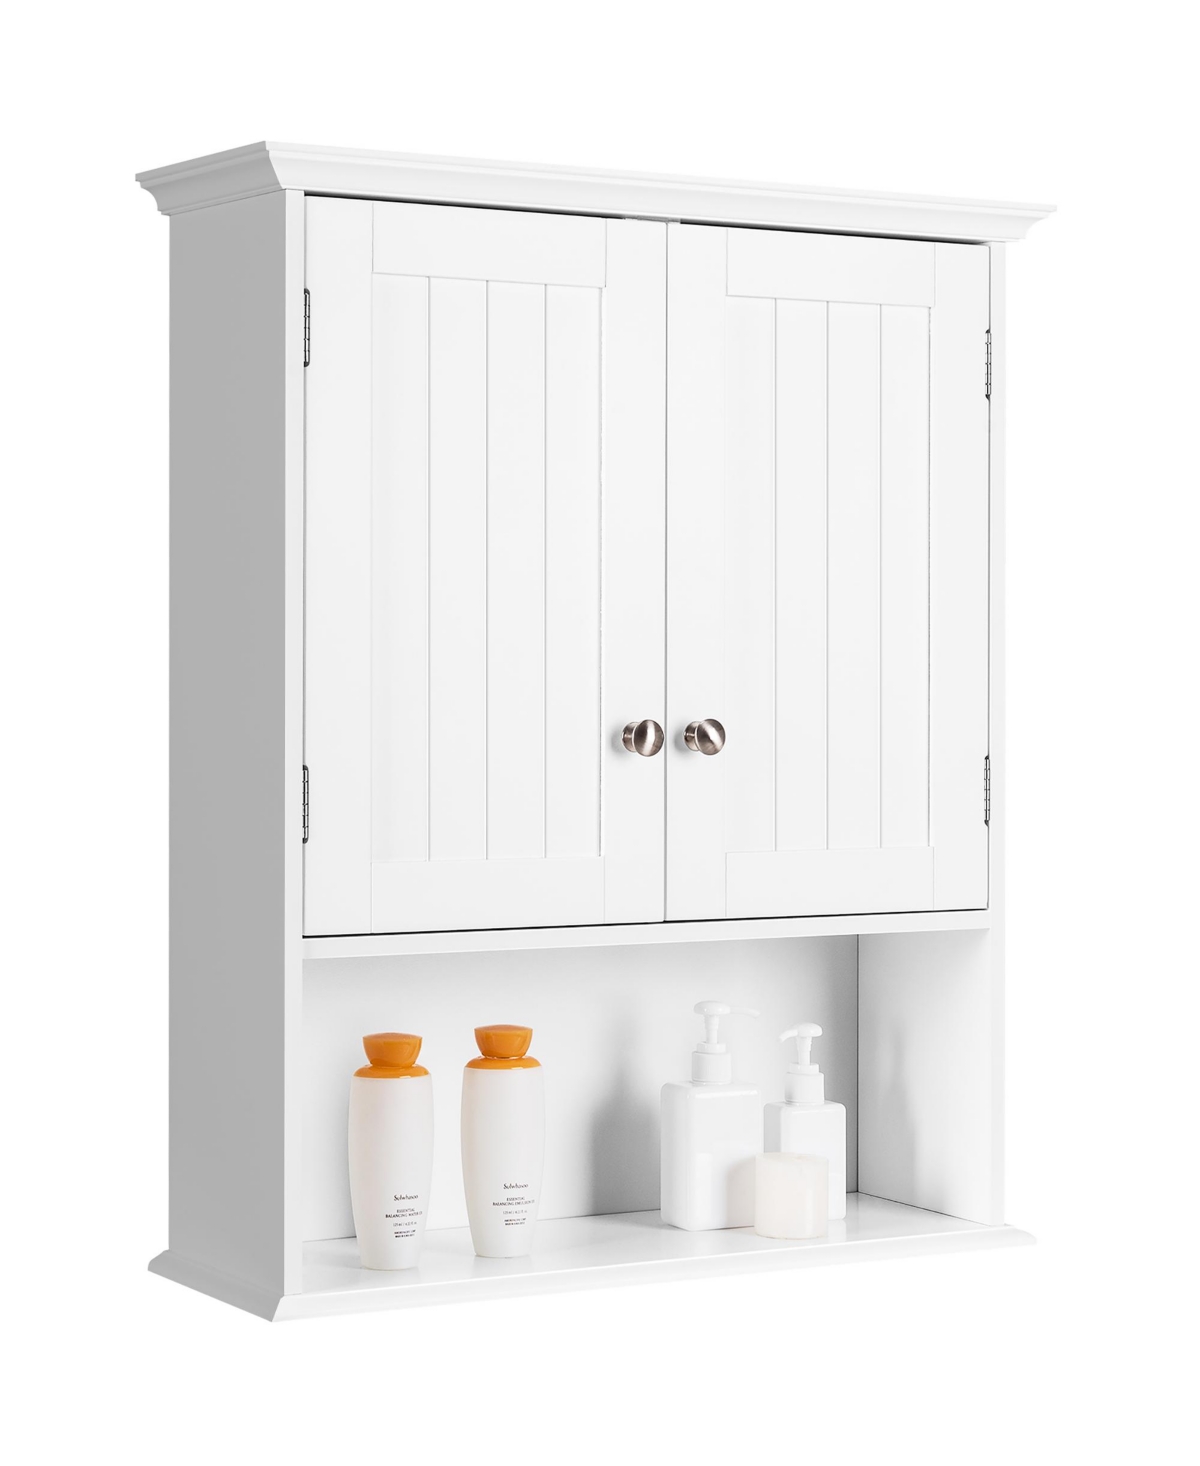 Wall Mount Bathroom Cabinet Storage Organizer Medicine Cabinet - White